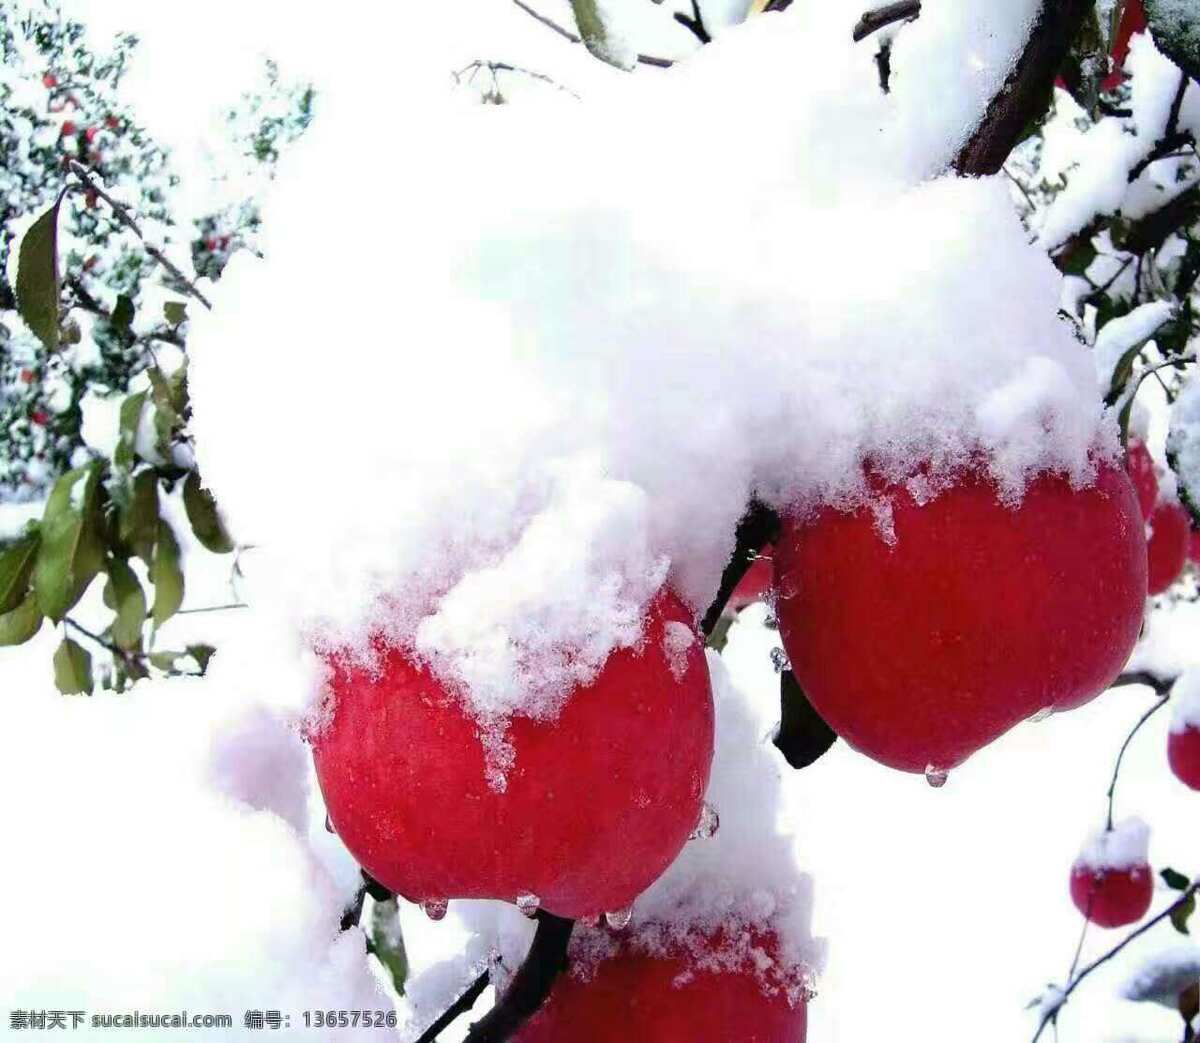 覆雪苹果 苹果 苹果树 果树 水果 套袋 有机苹果 冰糖心苹果 果园 雪后 红苹果 植物 生物世界